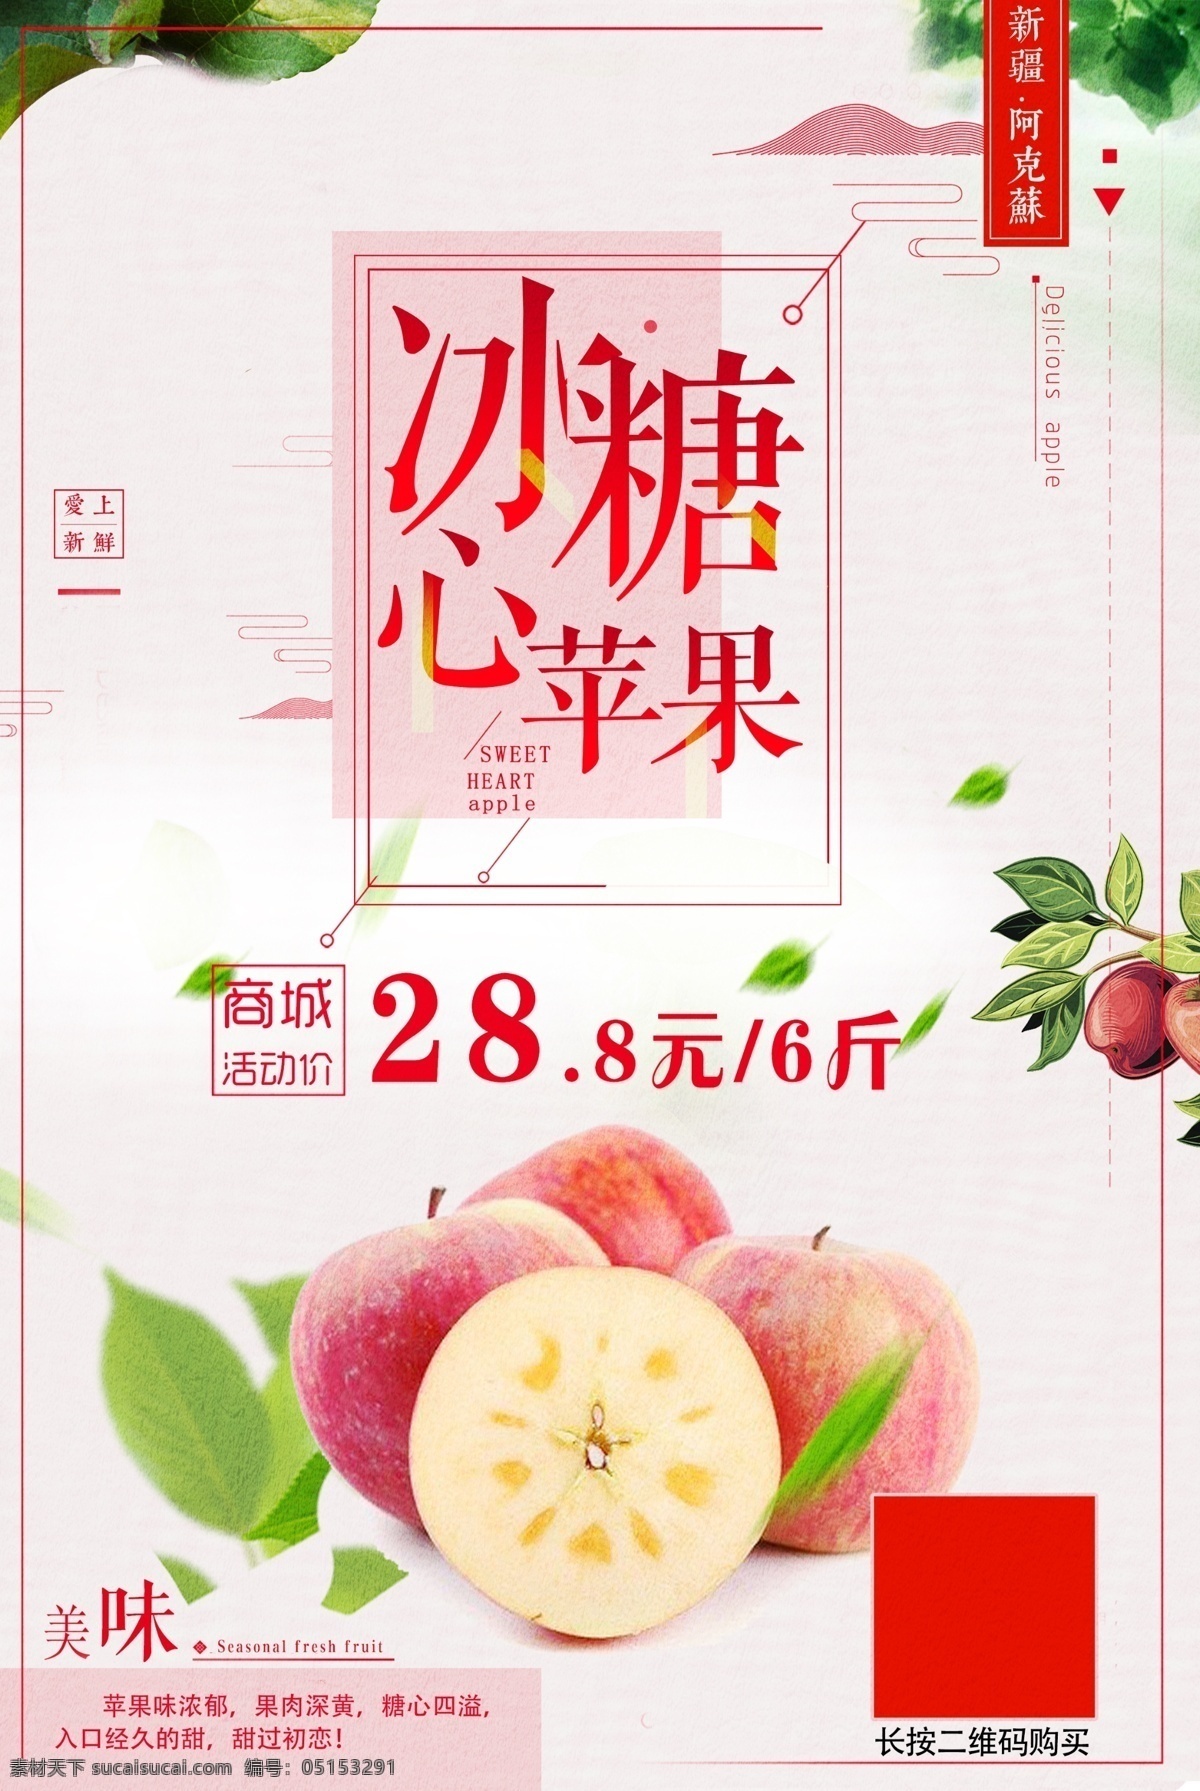 苹果 简约 宣传 促销 海报 苹果促销海报 简约清新 中国风 几何图形元素 粉色系